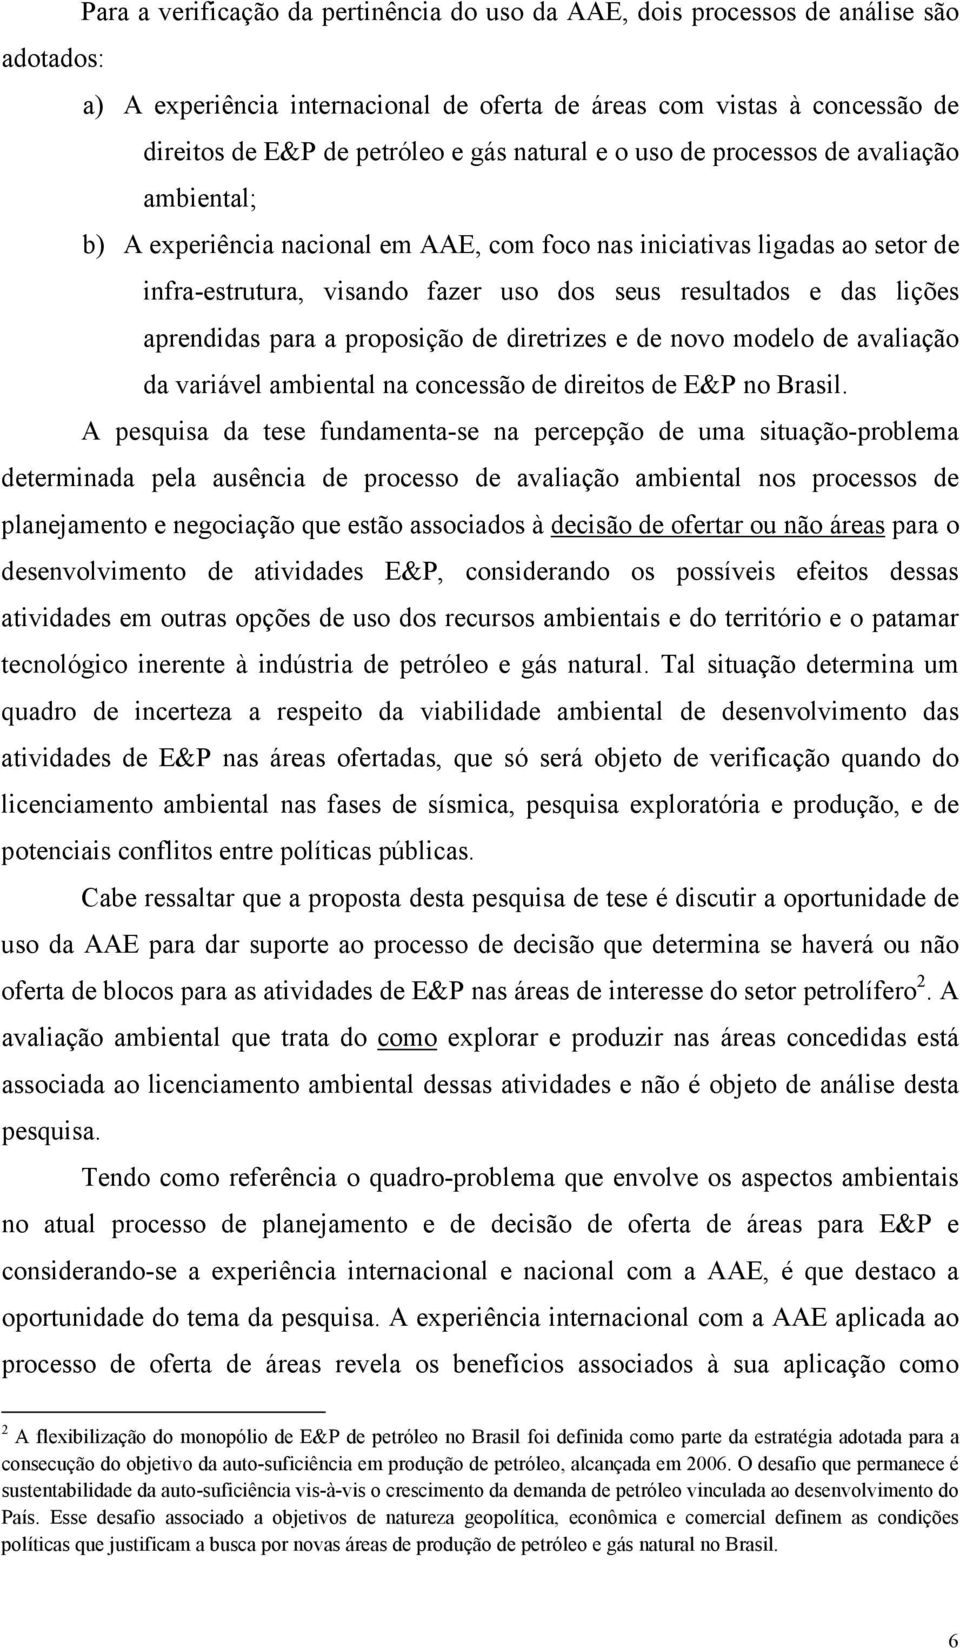 aprendidas para a proposição de diretrizes e de novo modelo de avaliação da variável ambiental na concessão de direitos de E&P no Brasil.